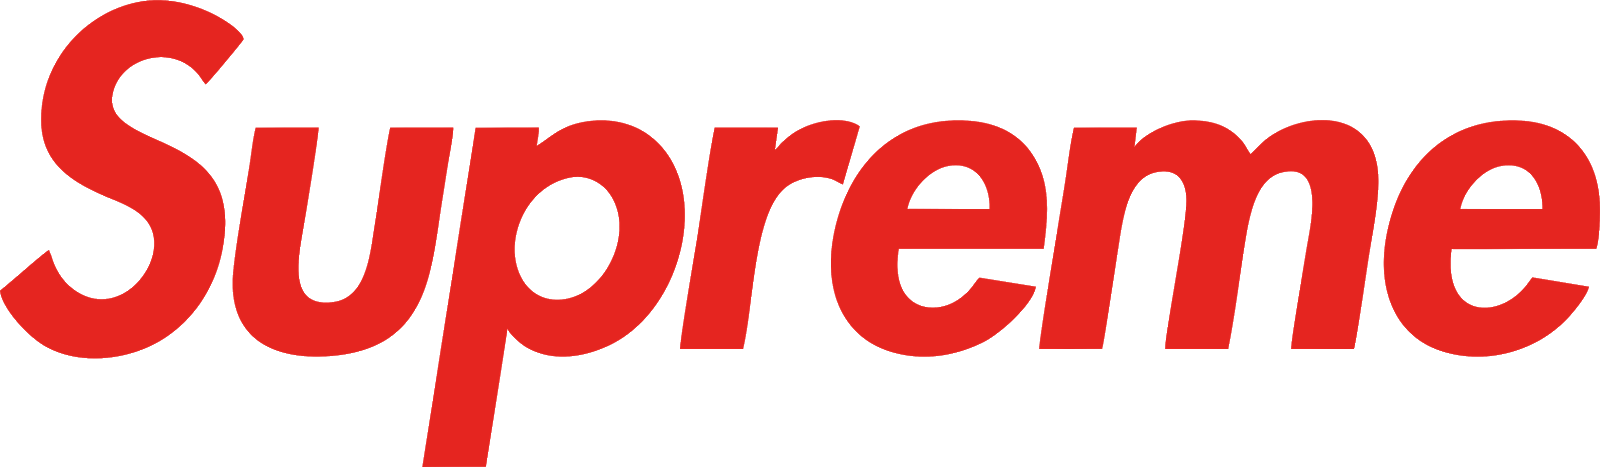 Supreme Logo Transparent Images